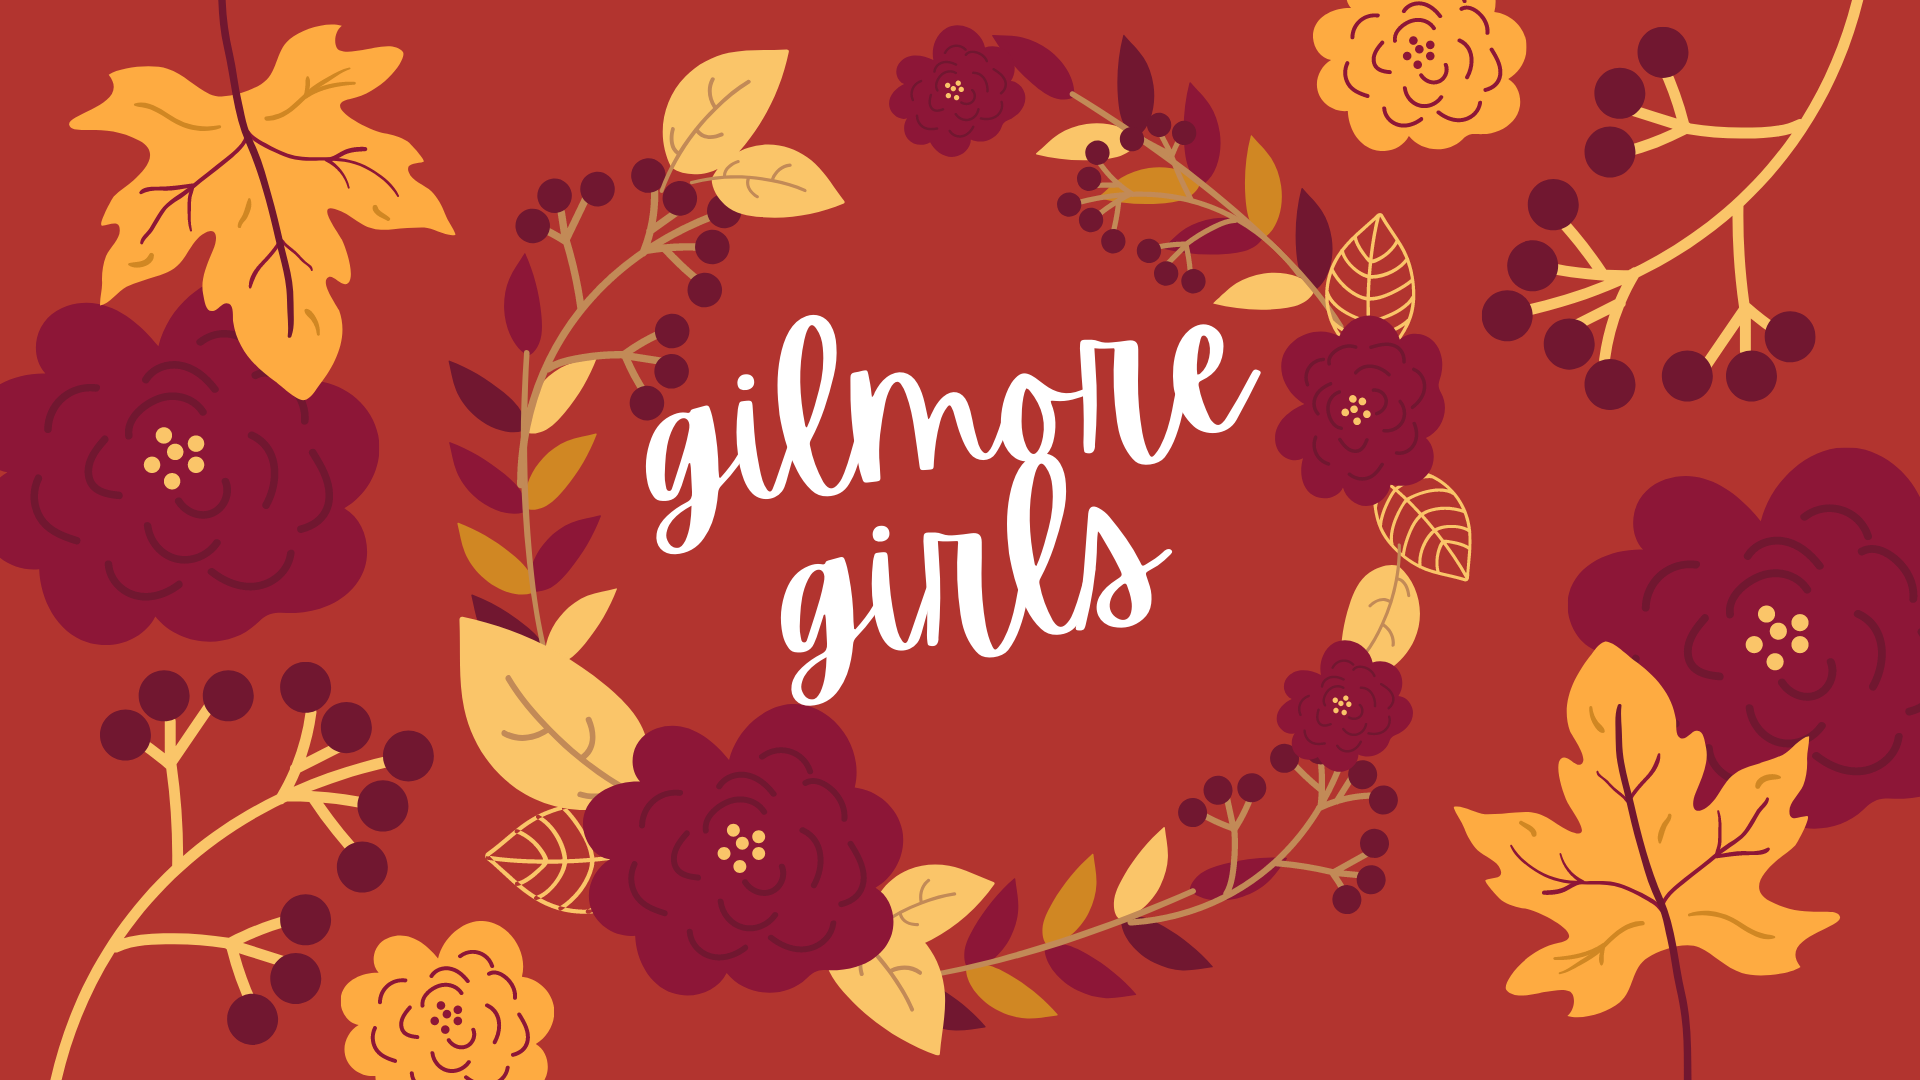 Gilmore Girls Wallpaper for Desktop & Cell Phone